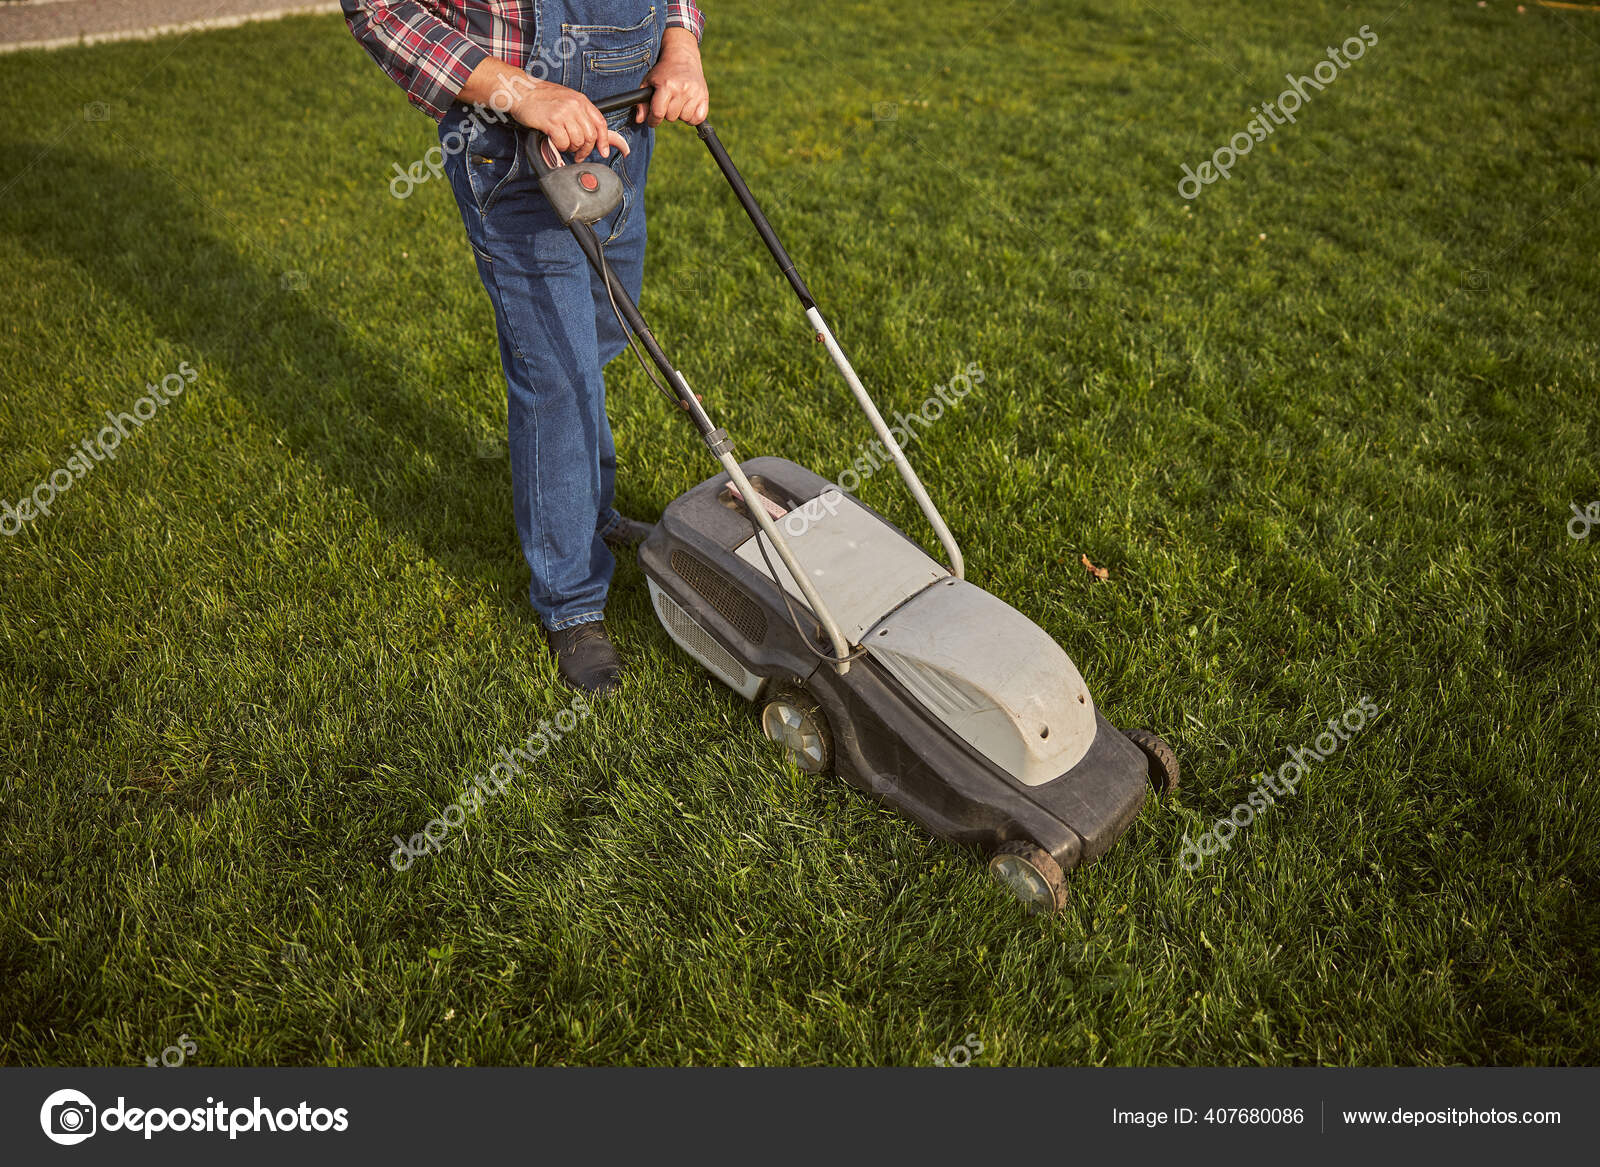 Mand opererer en mens trimning græsset — Stock-foto © svitlanahulko85.gmail.com #407680086